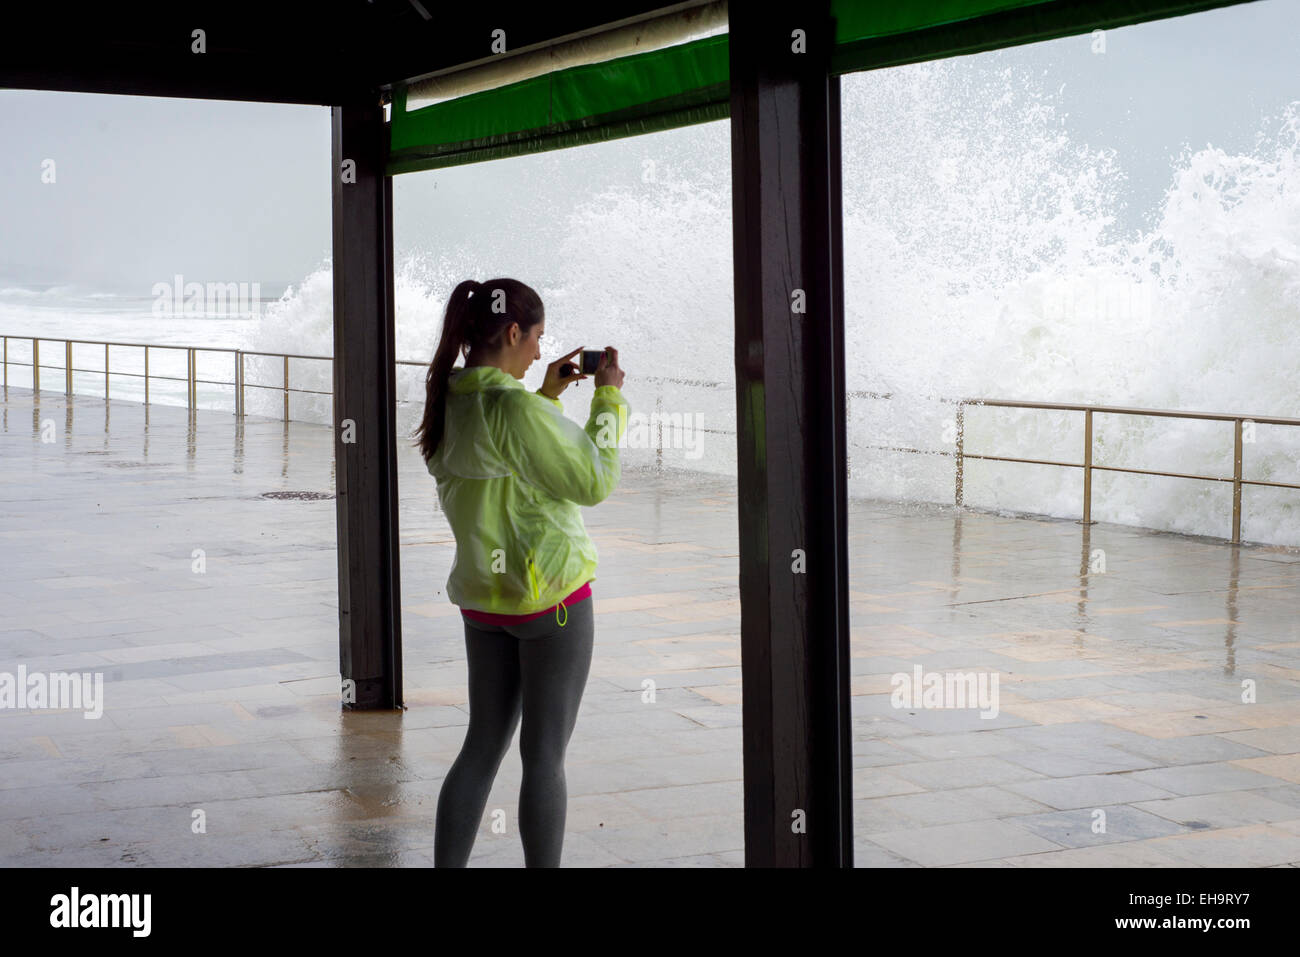 Photographier les femmes de grandes vagues qui contre broadwalk avec téléphone mobile, habillé en course Banque D'Images